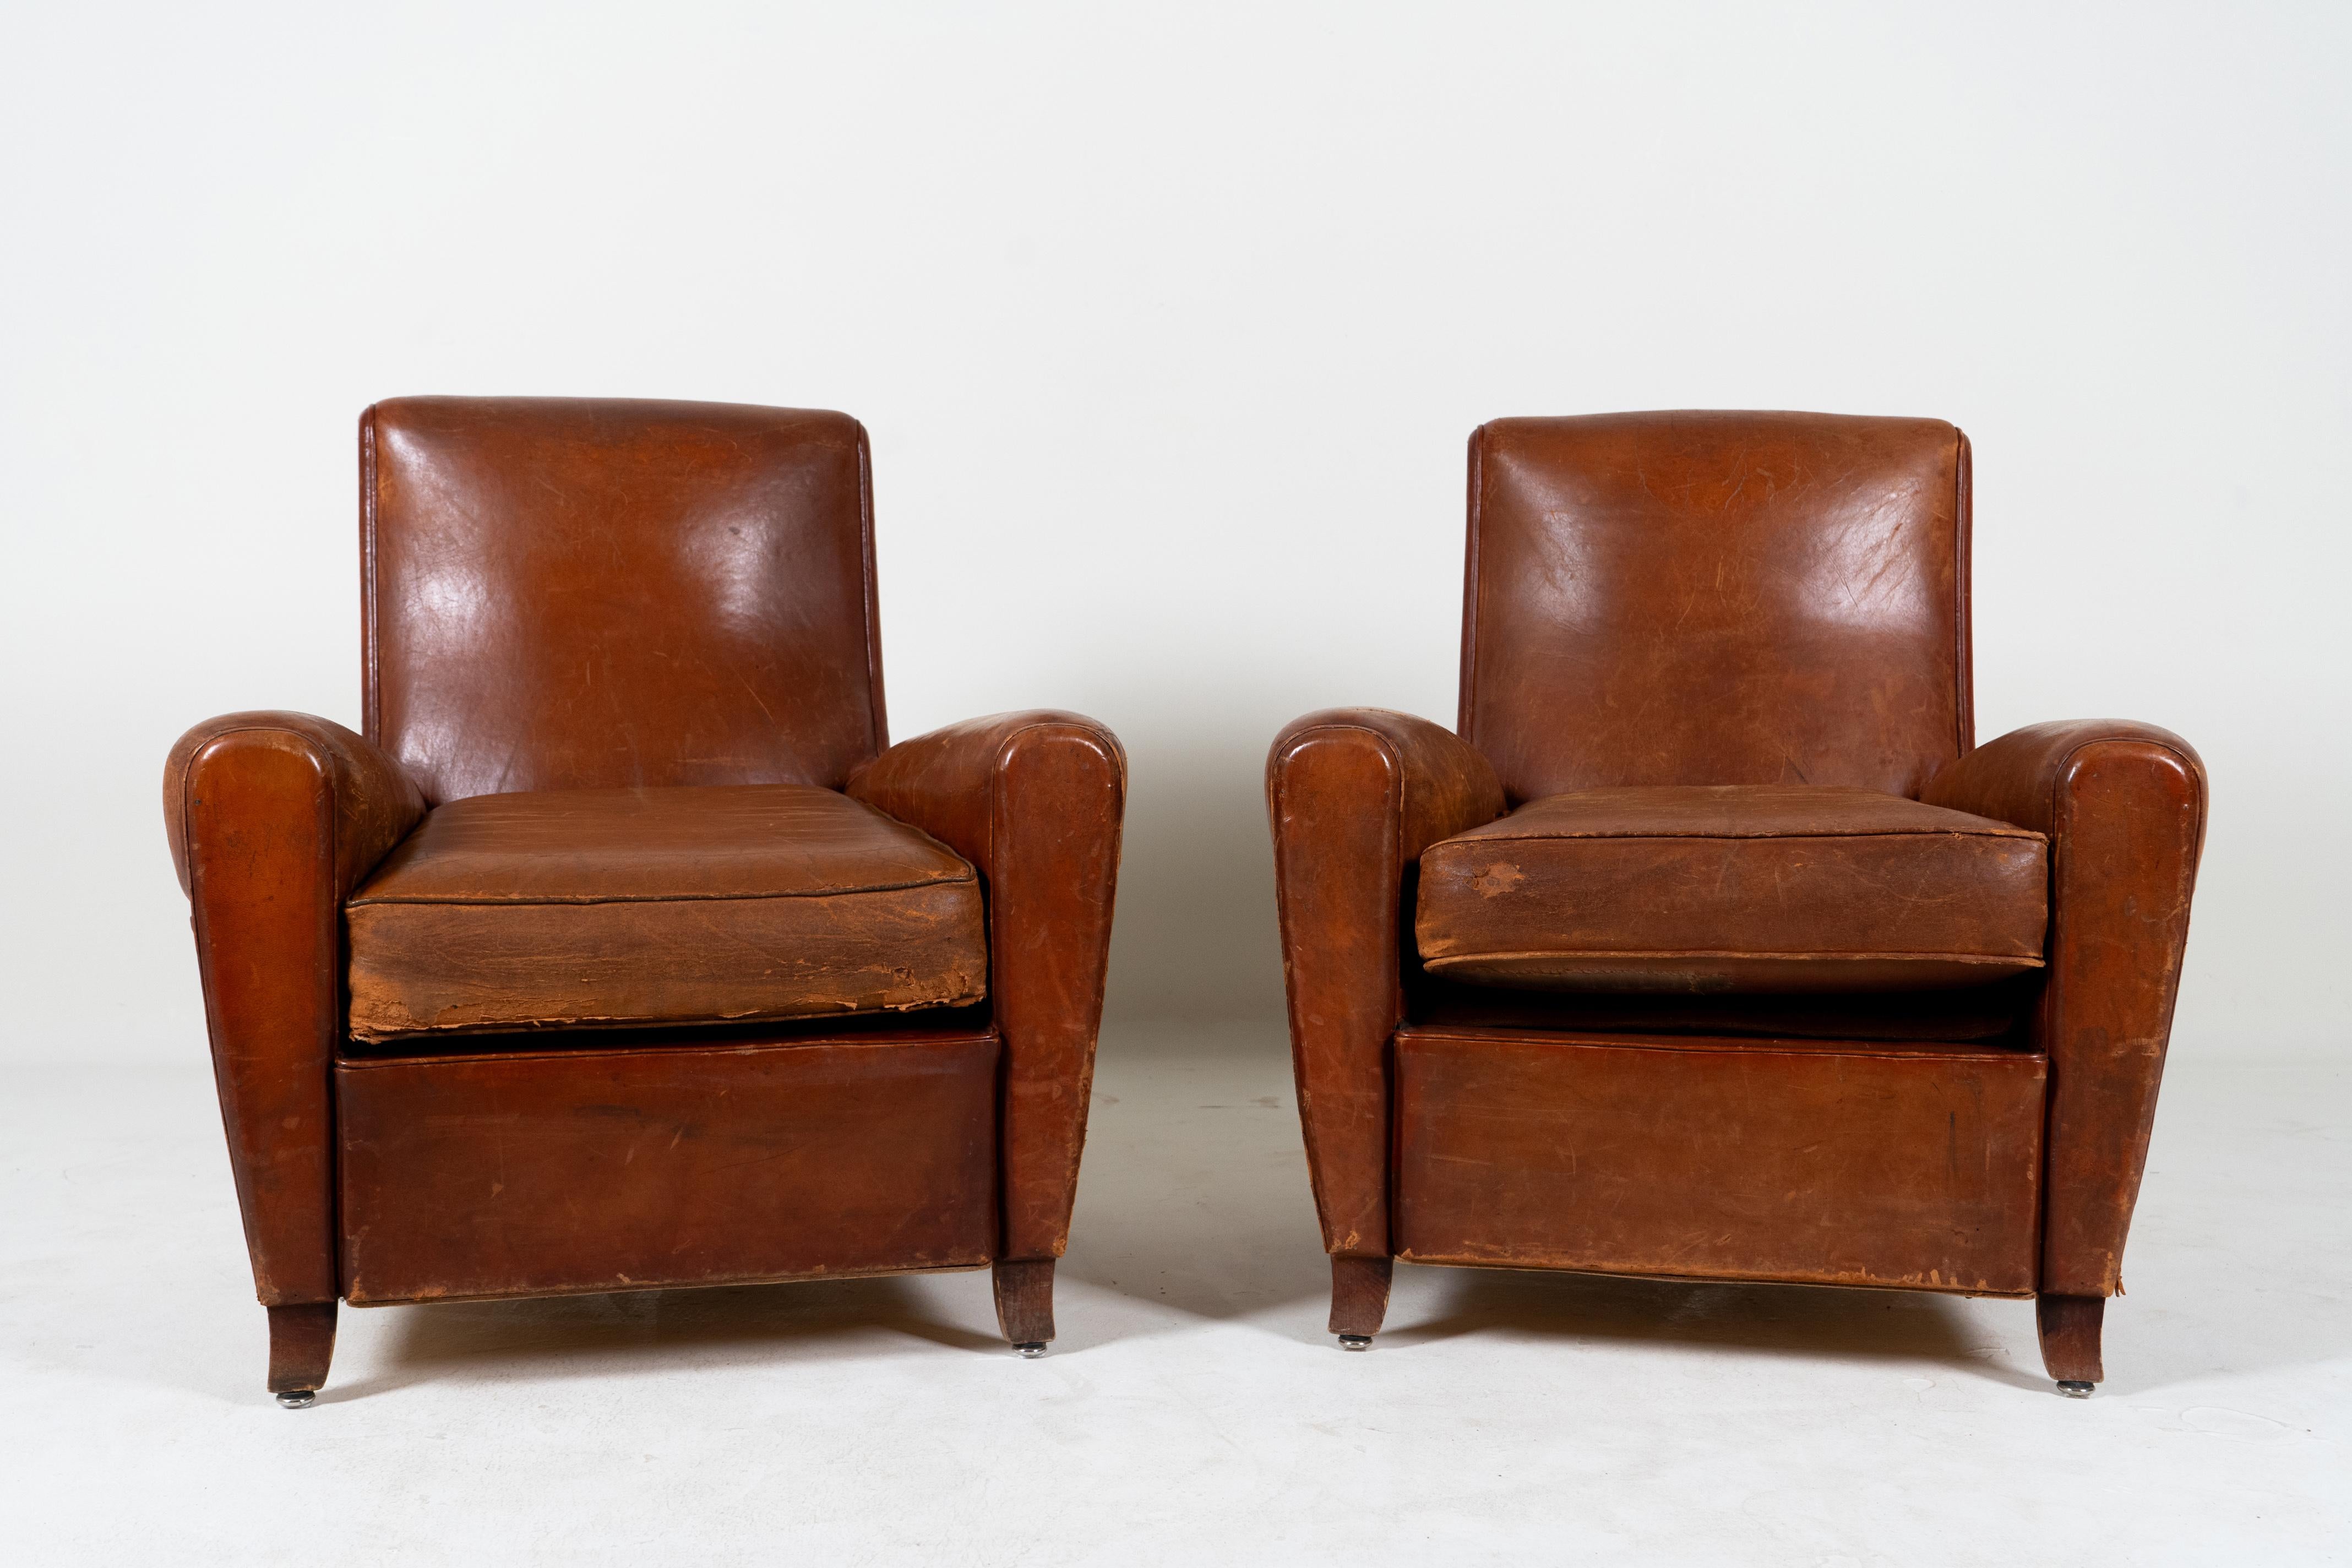 Ces fauteuils club en cuir français aux proportions gracieuses ont  Les lignes classiques de l'Art déco avec des courbes sobres et des dossiers légèrement inclinés.  Les chaises sont confortables, accueillantes et parfaitement dimensionnées pour